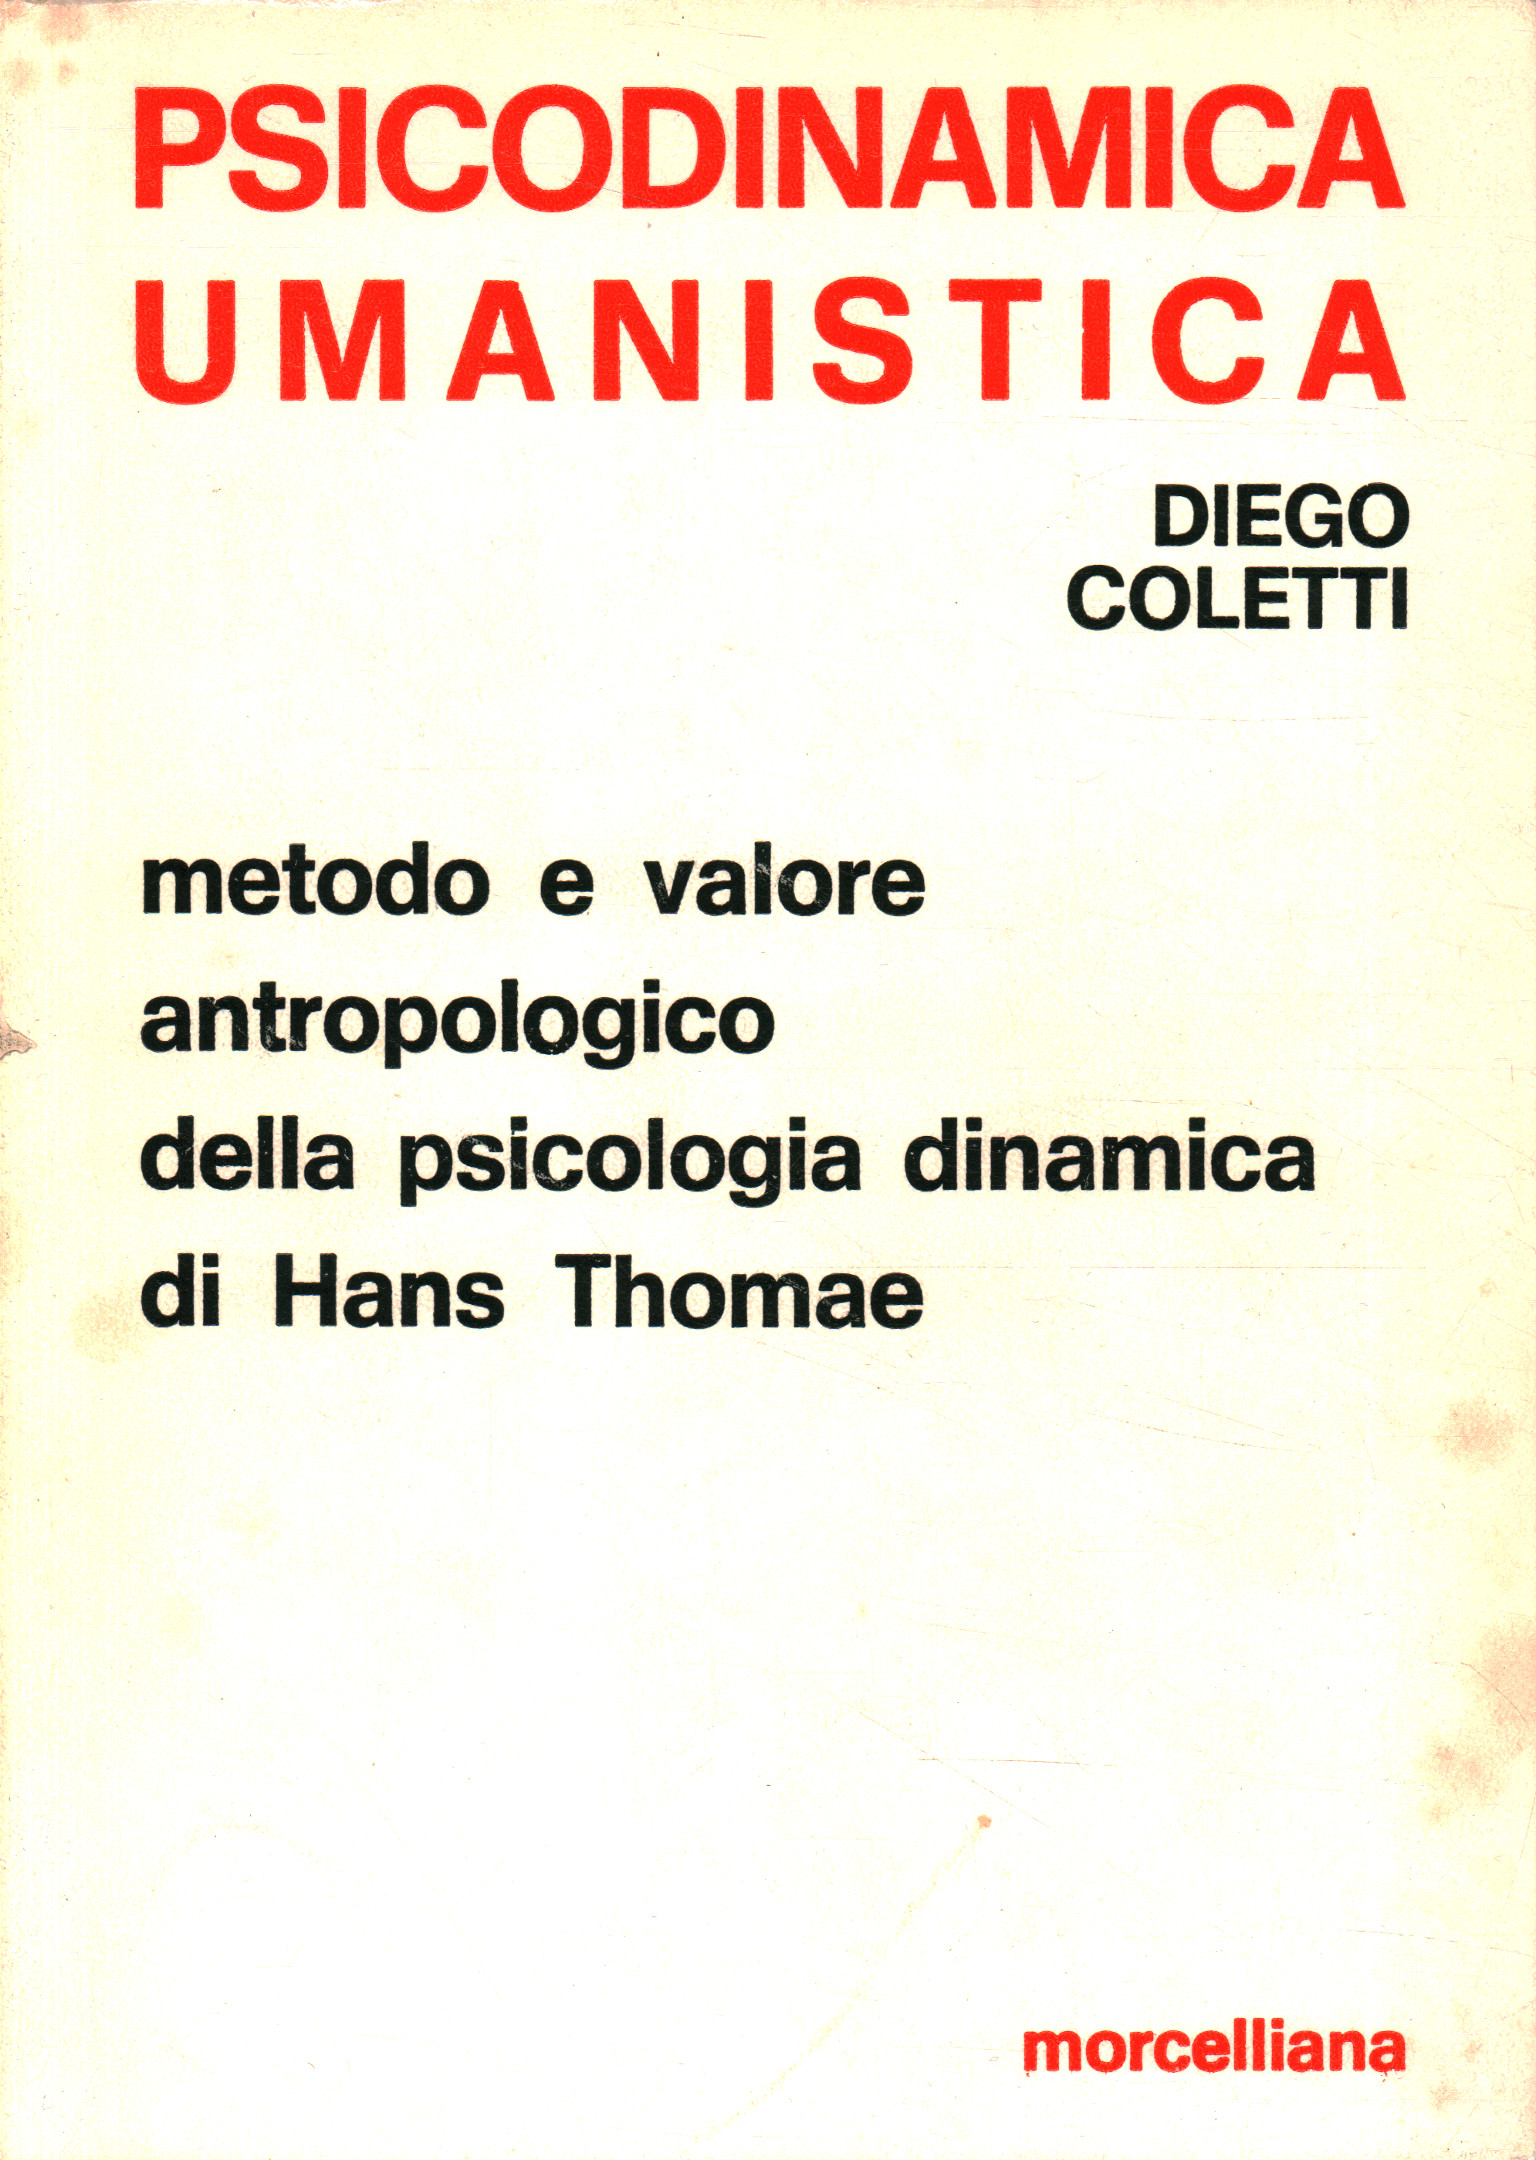 La psychologie dynamique de Hans Thomae